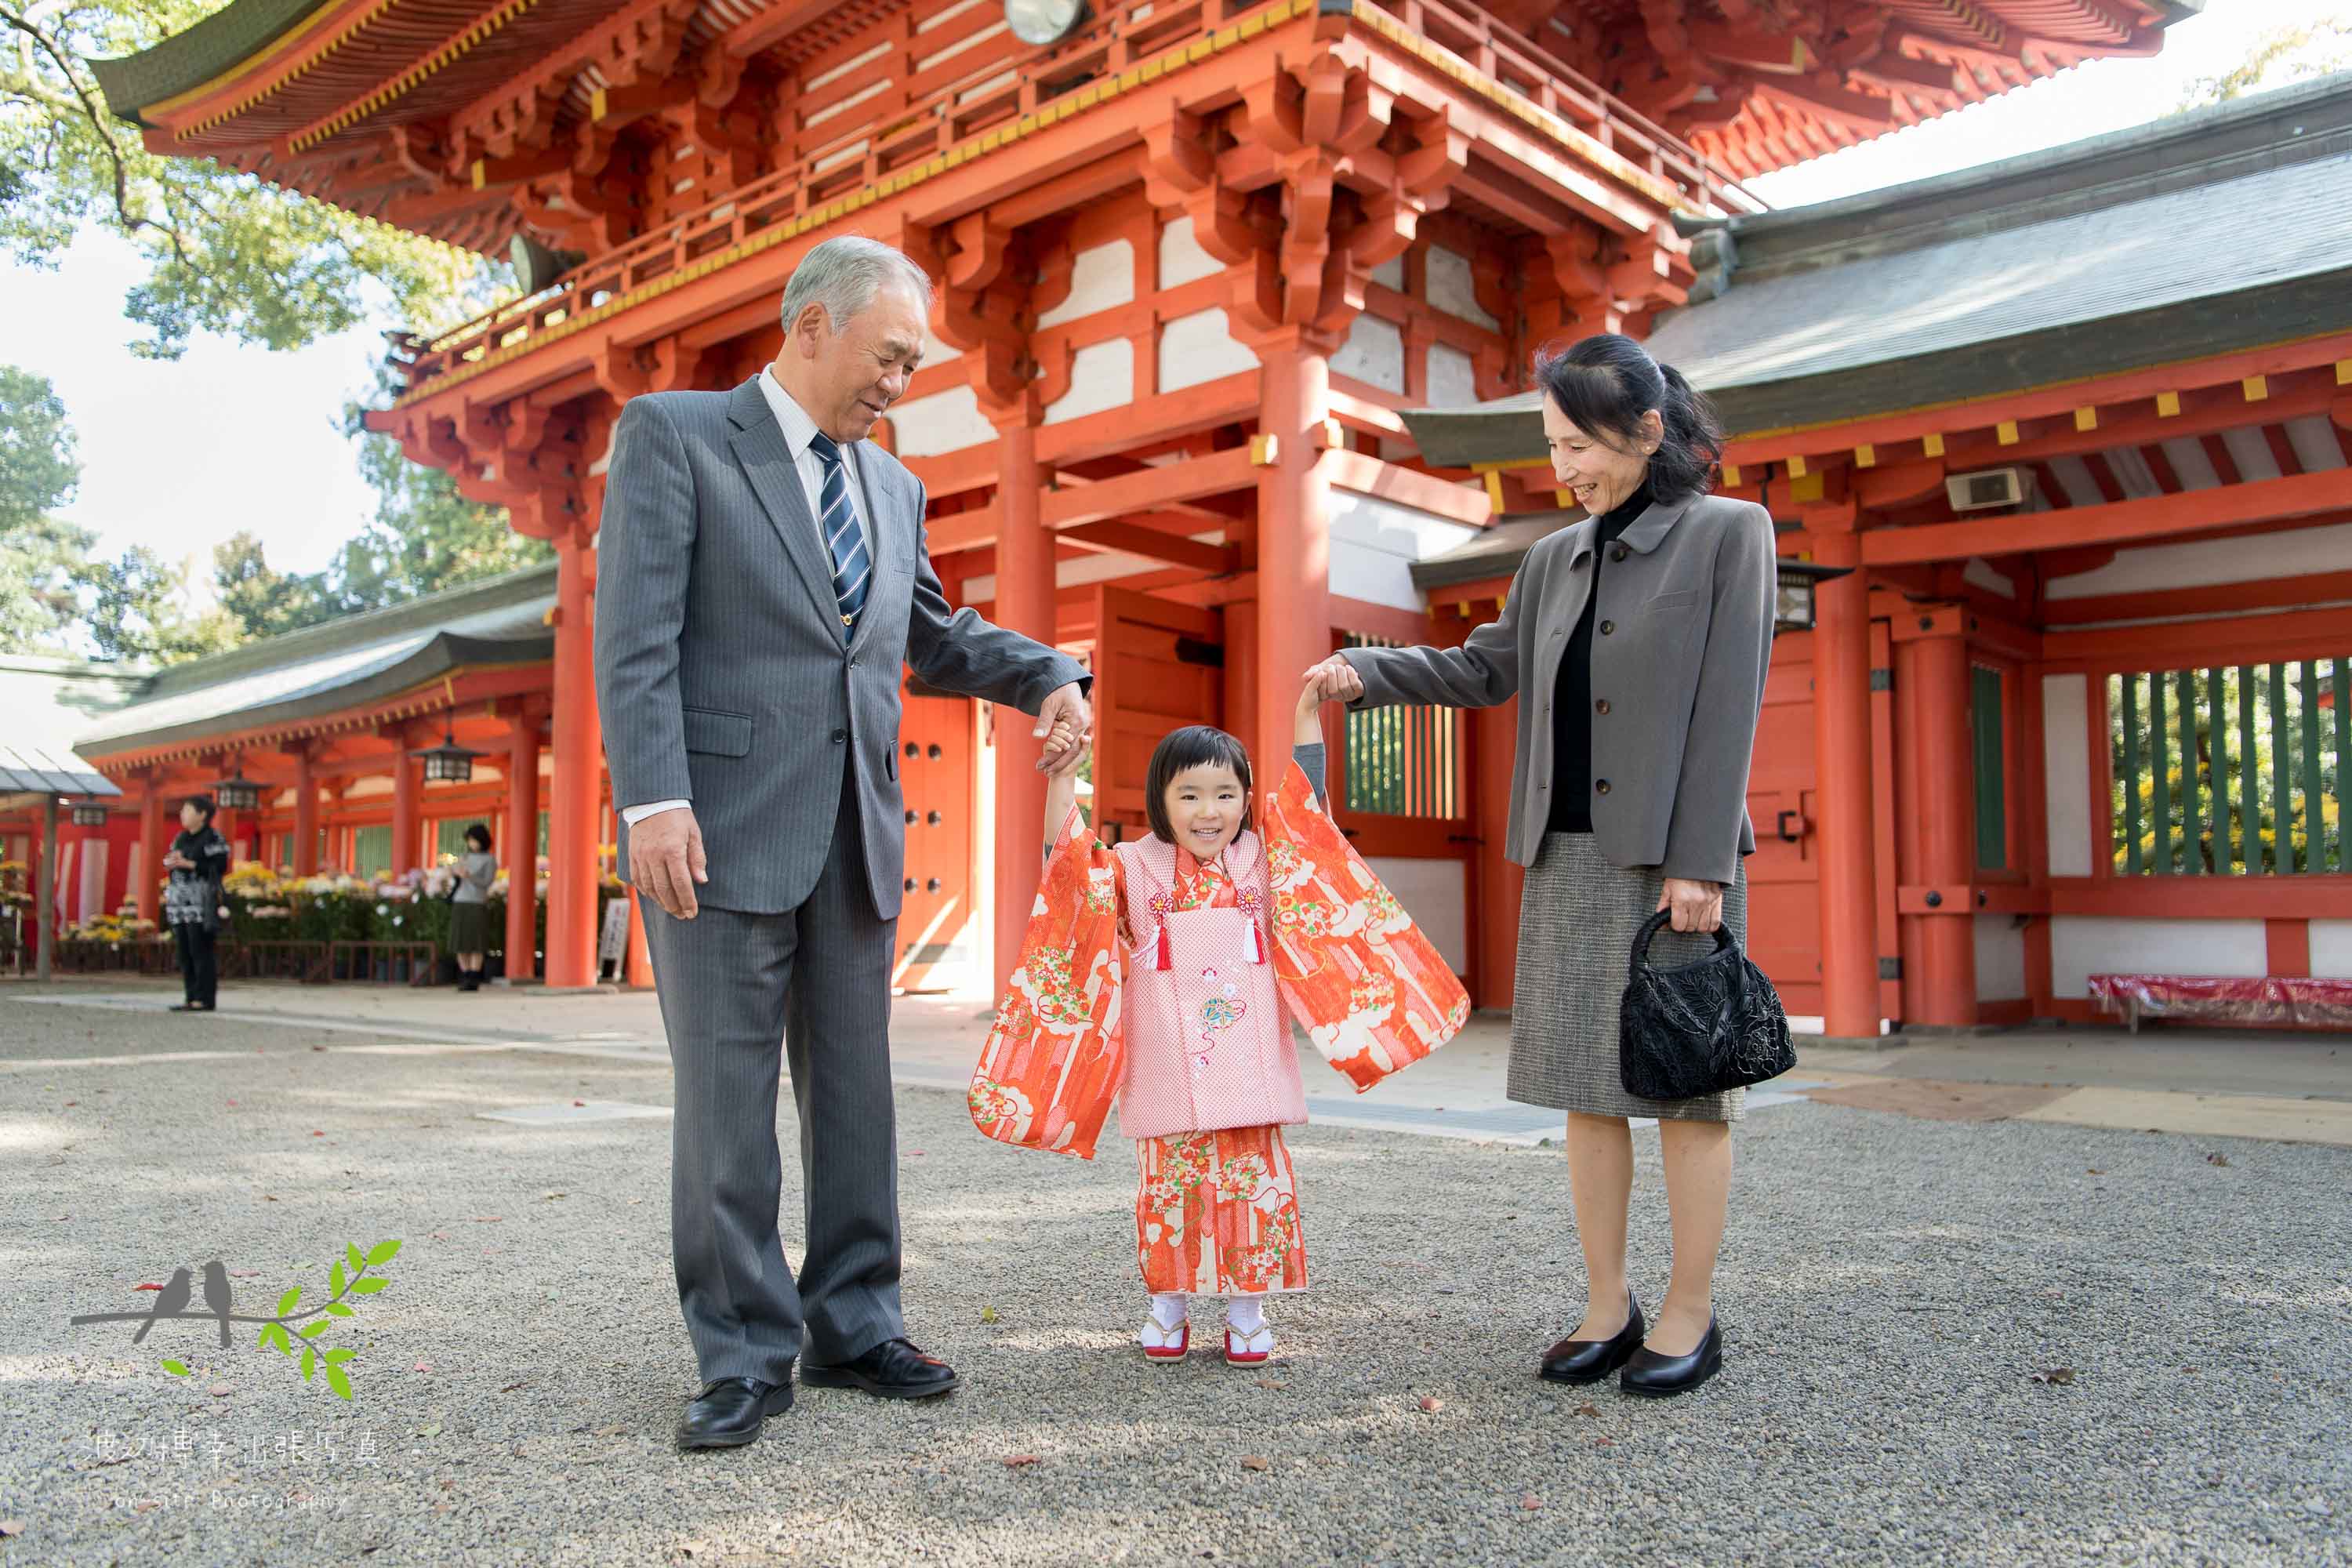 オレンジ色の山門の前で立っているオレンジ色の着物を着た女の子と祖父と祖母